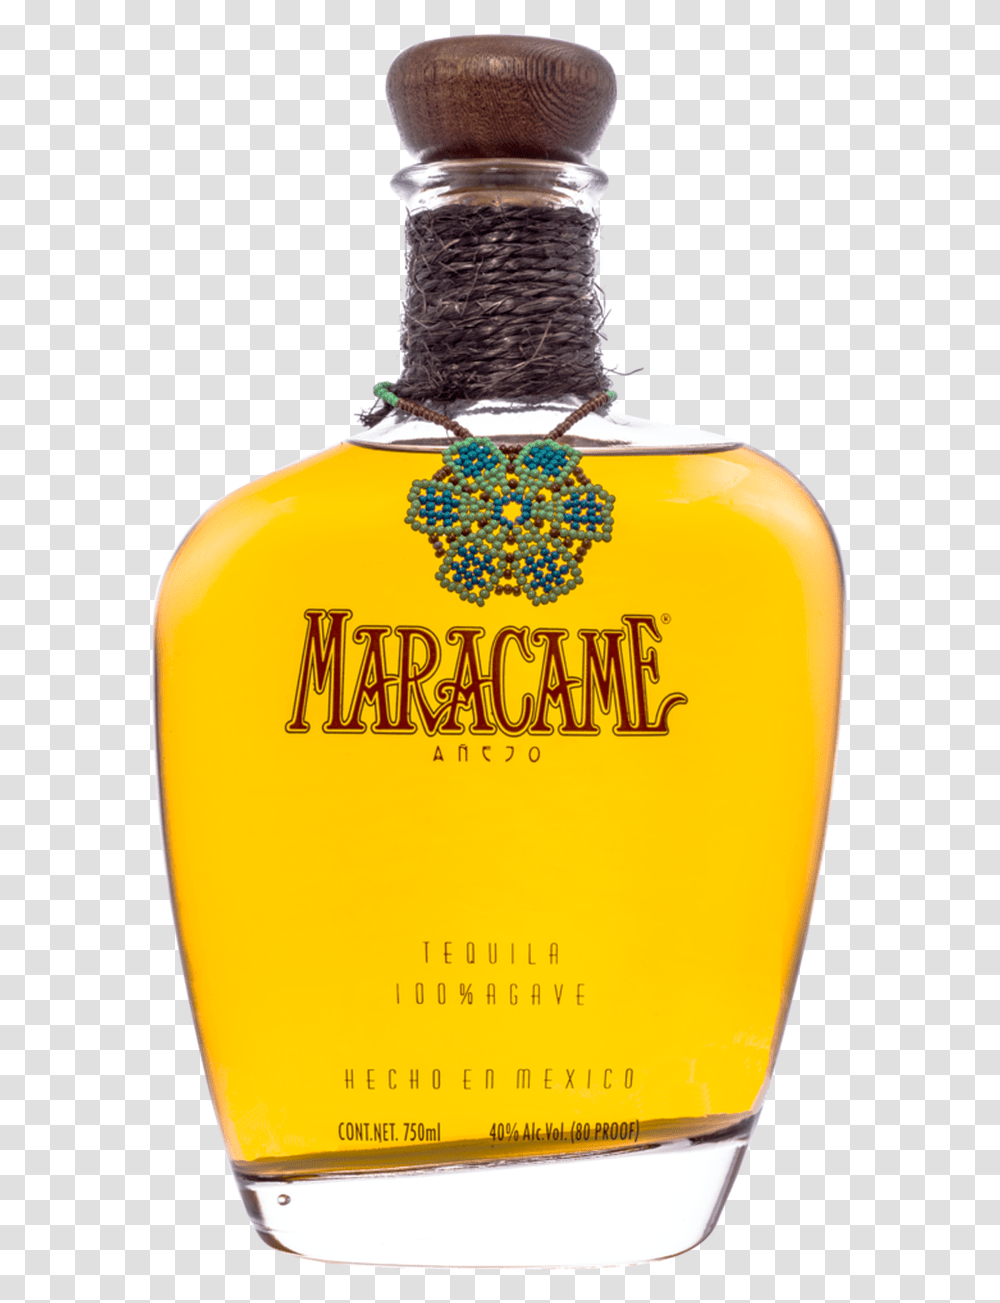 Maracame Anejo Tequila Maracame Tequila, Logo, Plant, Liquor Transparent Png